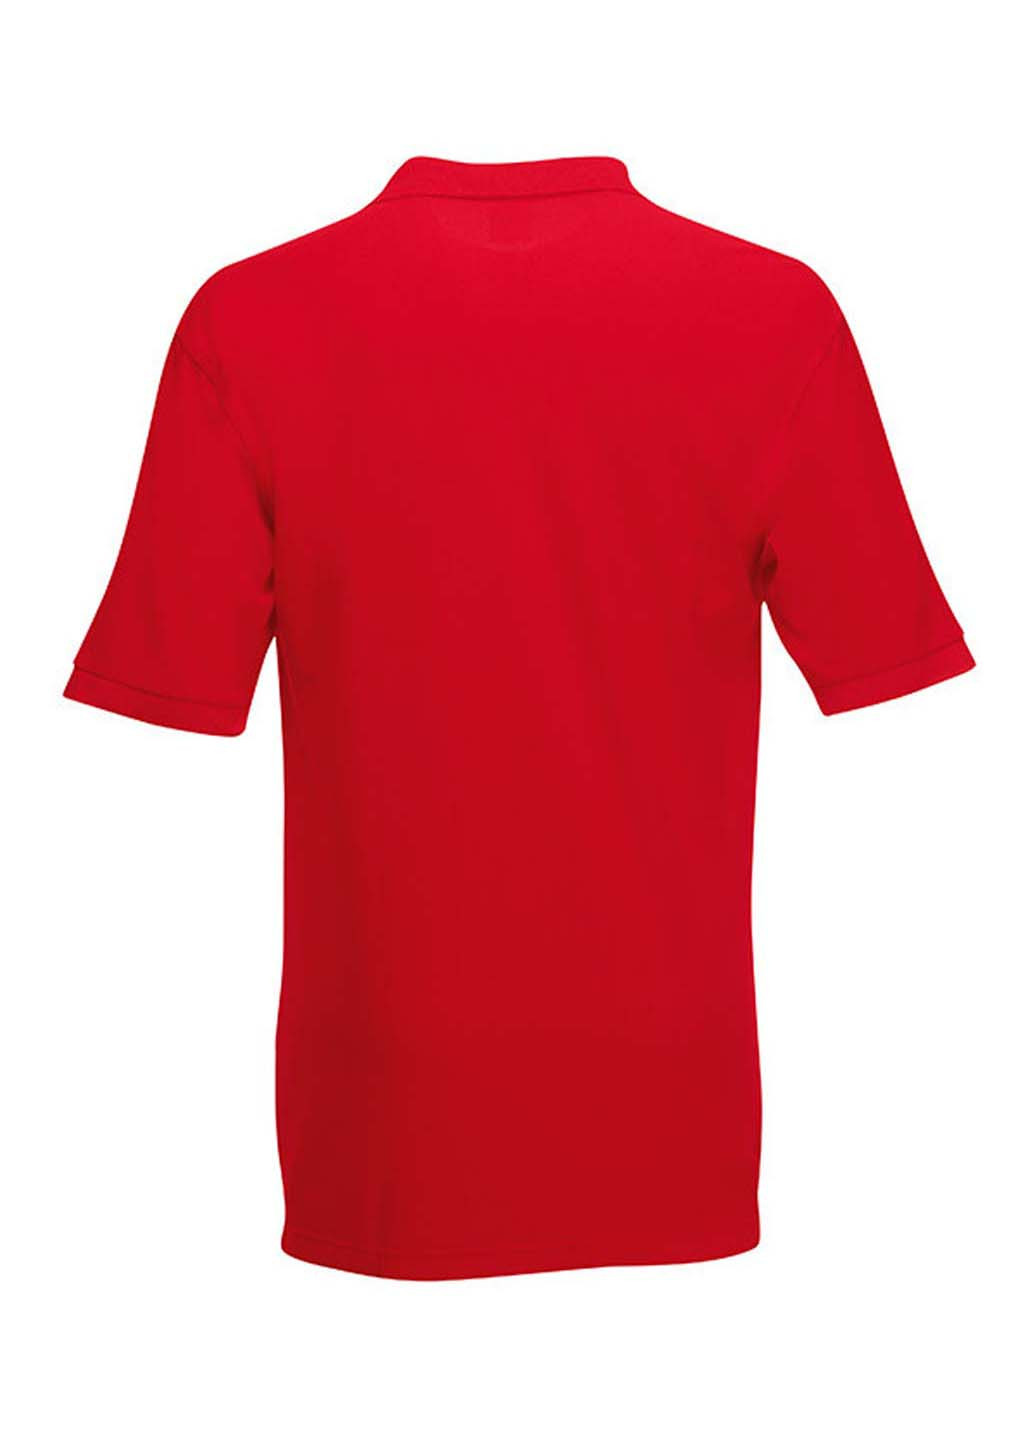 Красная детская футболка-поло для мальчика Fruit of the Loom